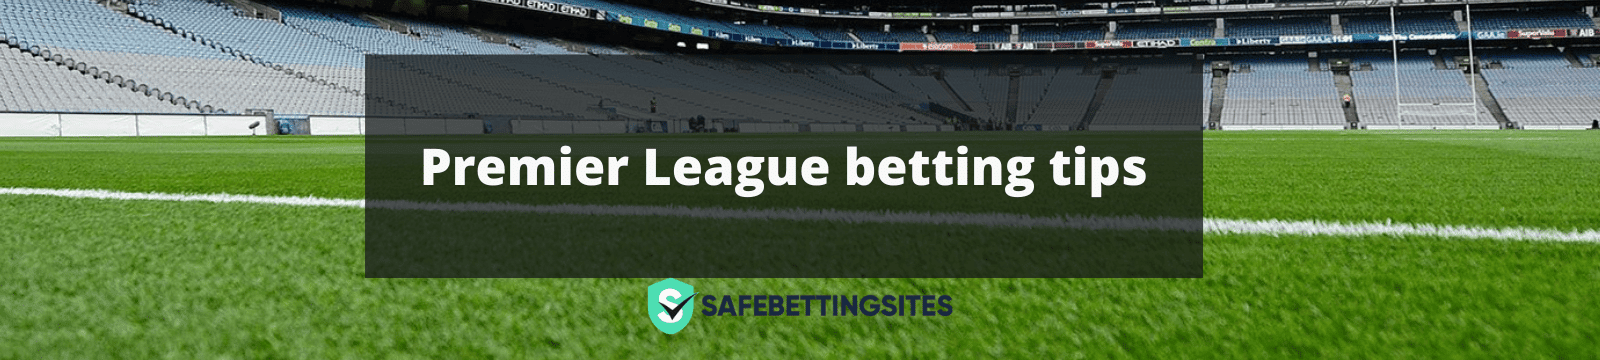 Premier League betting tips